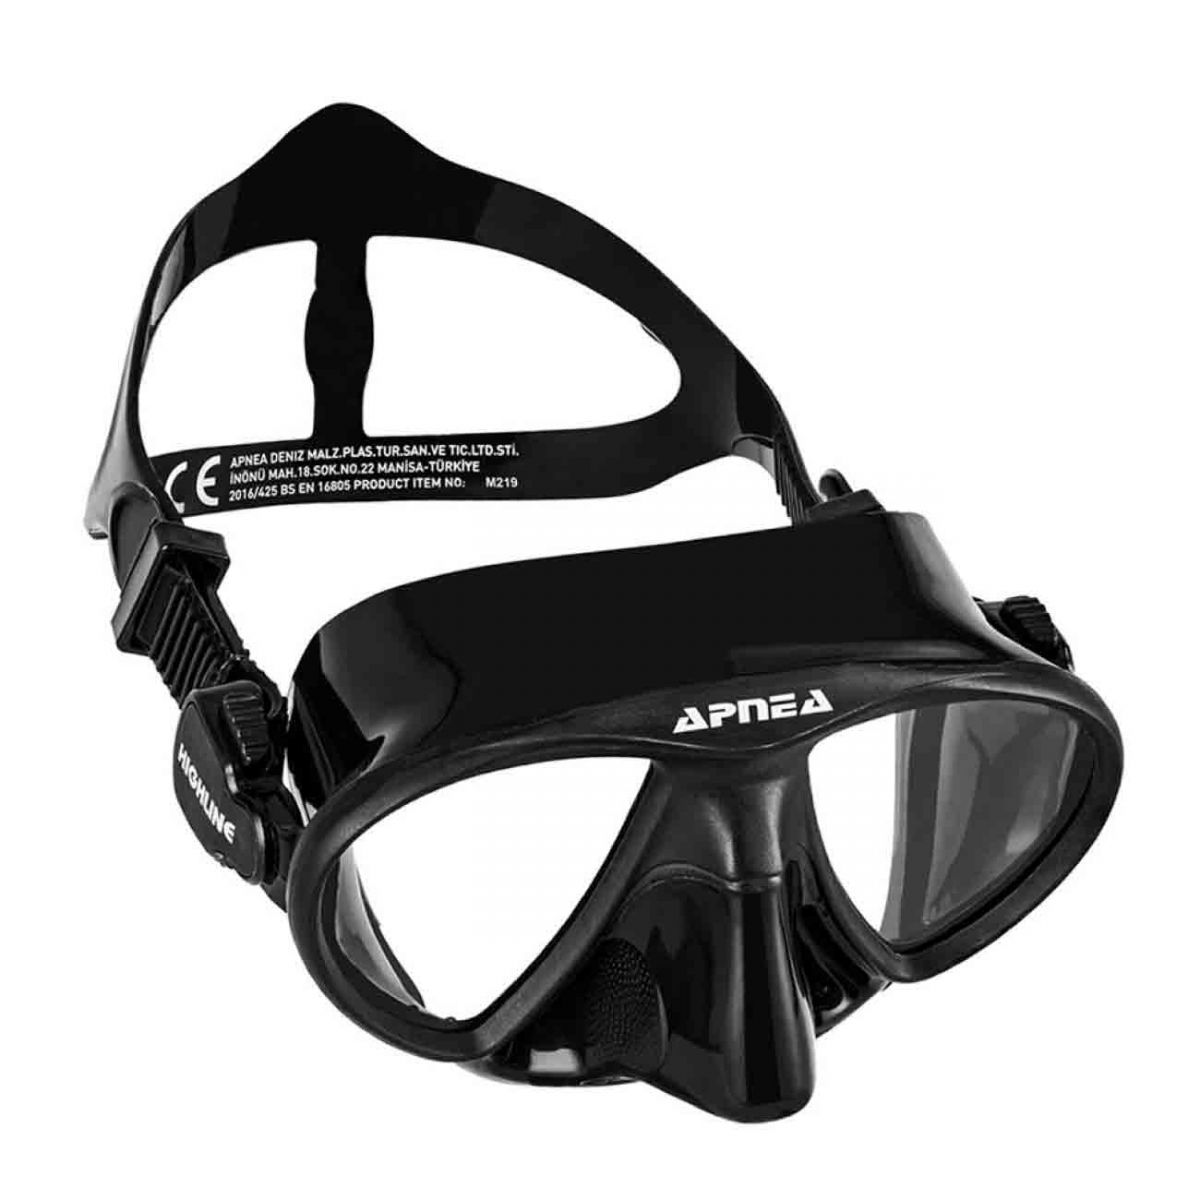 Apnea Highline Siyah Dalış Gözlüğü,Apnea kalitesinde uzun yıllar kullanabileceğiniz siyah dalış gözlüğü